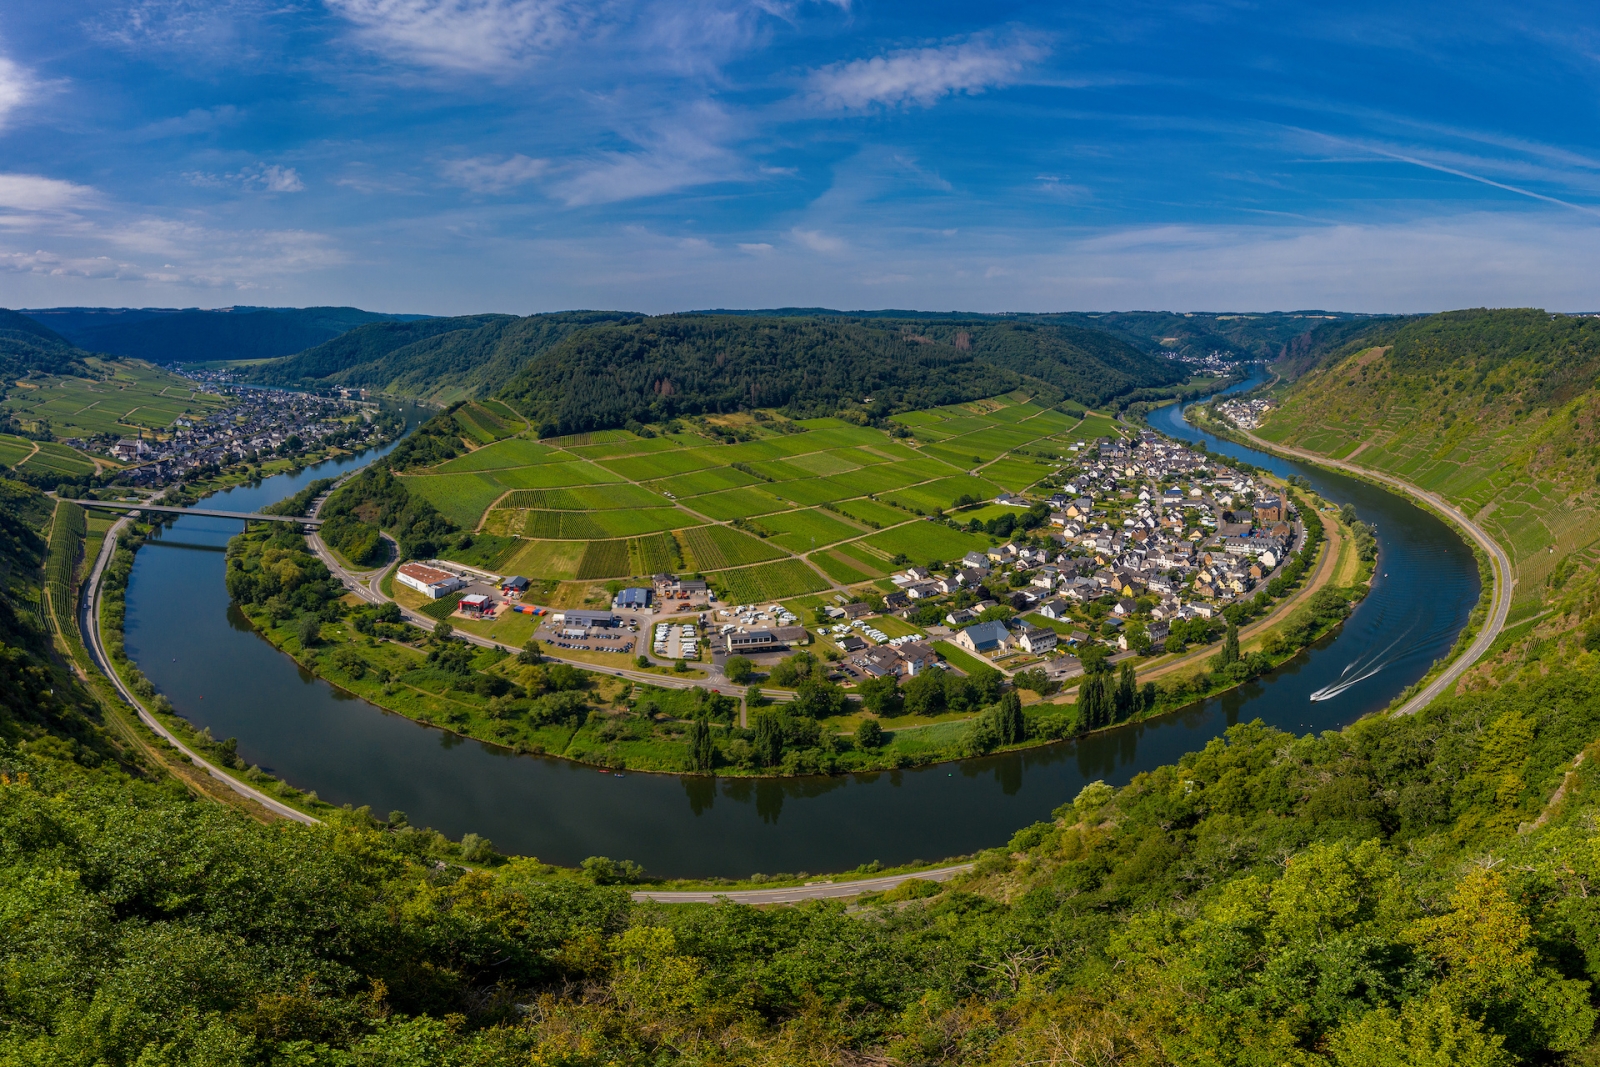 Vue panoramique sur la boucle de la Moselle près de Bruttig près de Cochem, Allemagne.